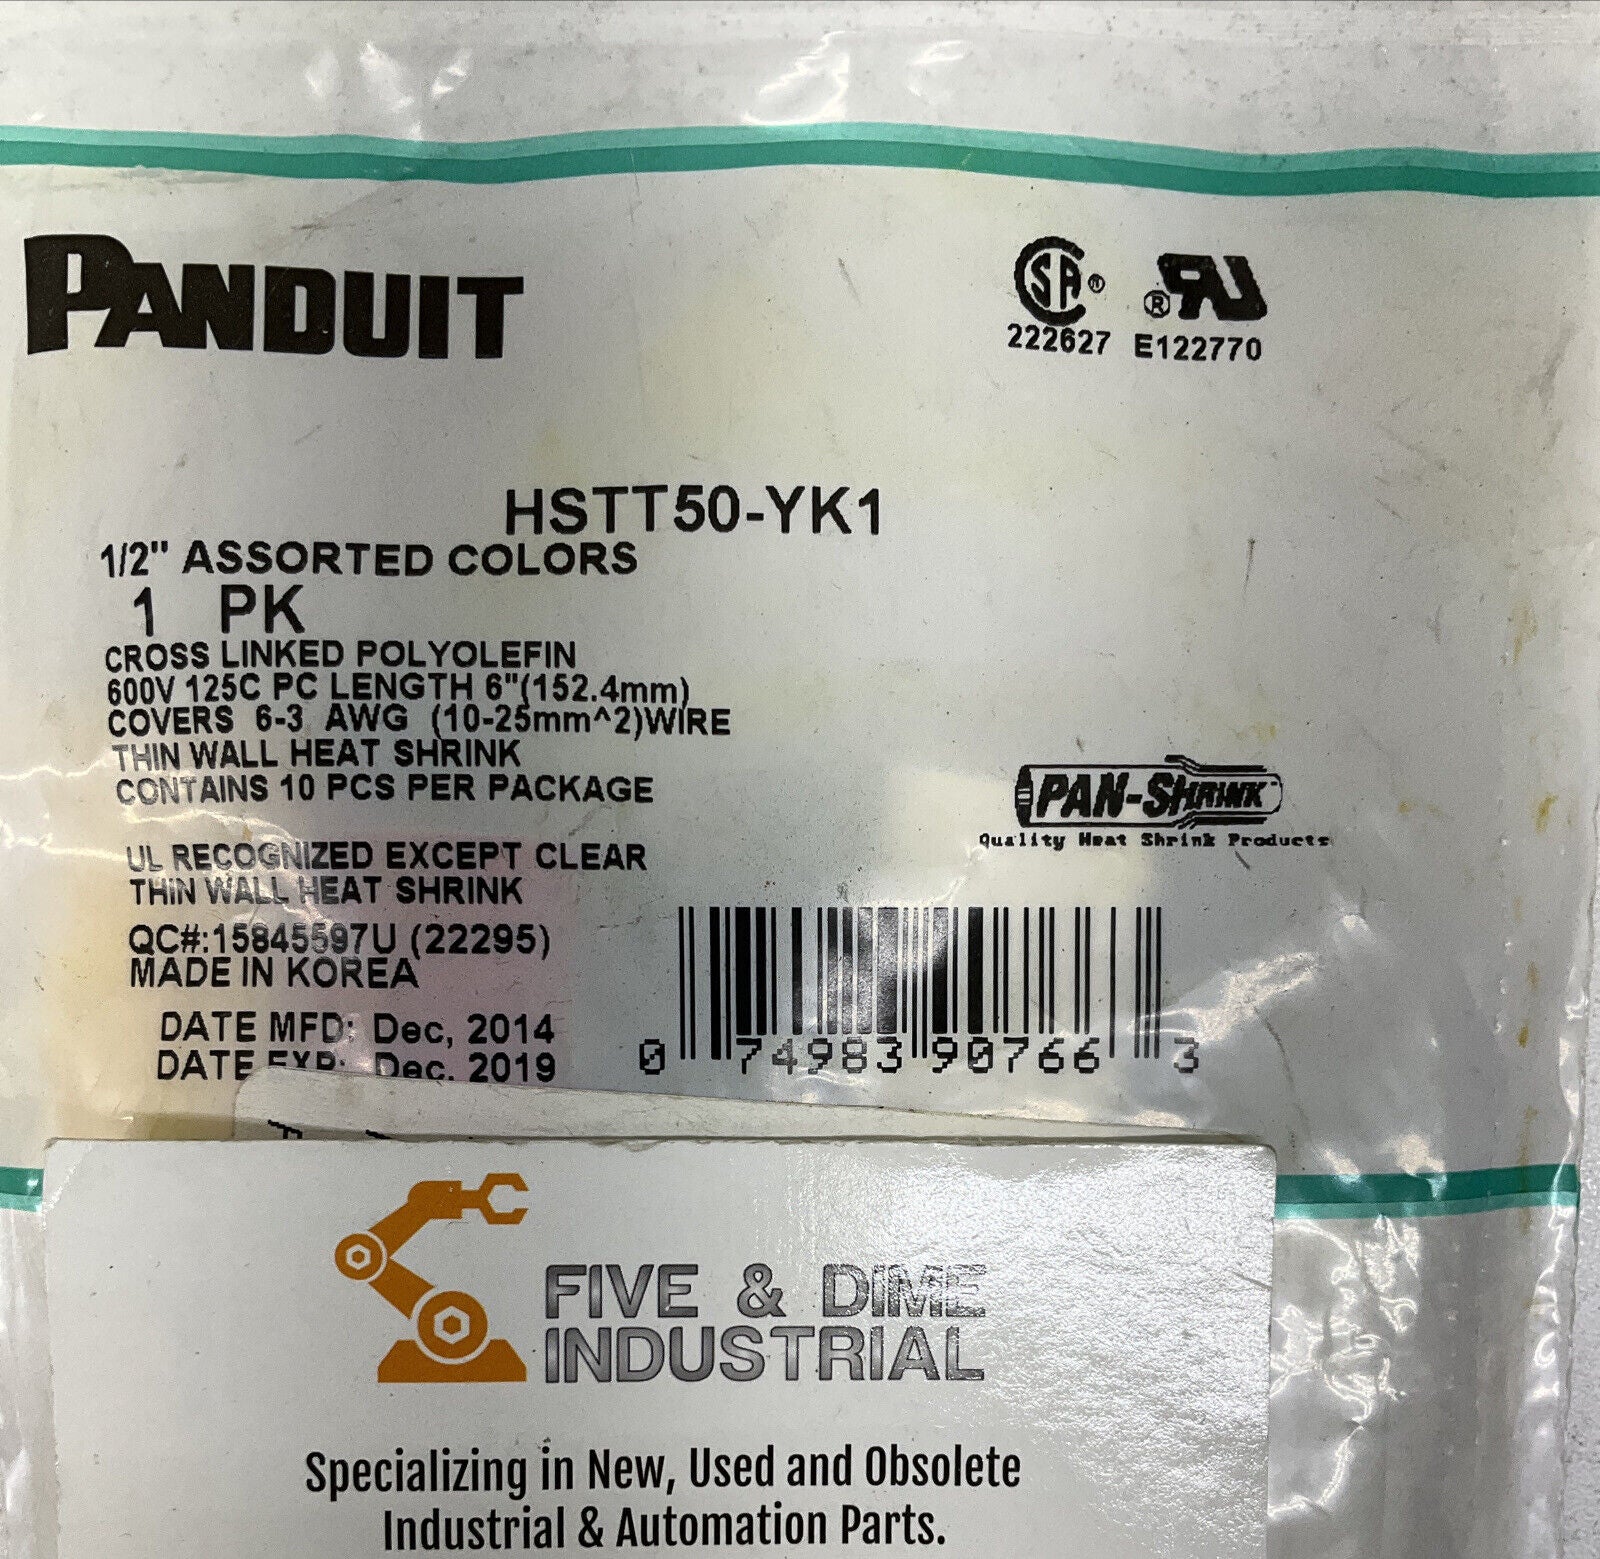 PANDUIT HSTT50-YK1 1/2” 1 PK ASSORTED COLORS  (GR158)